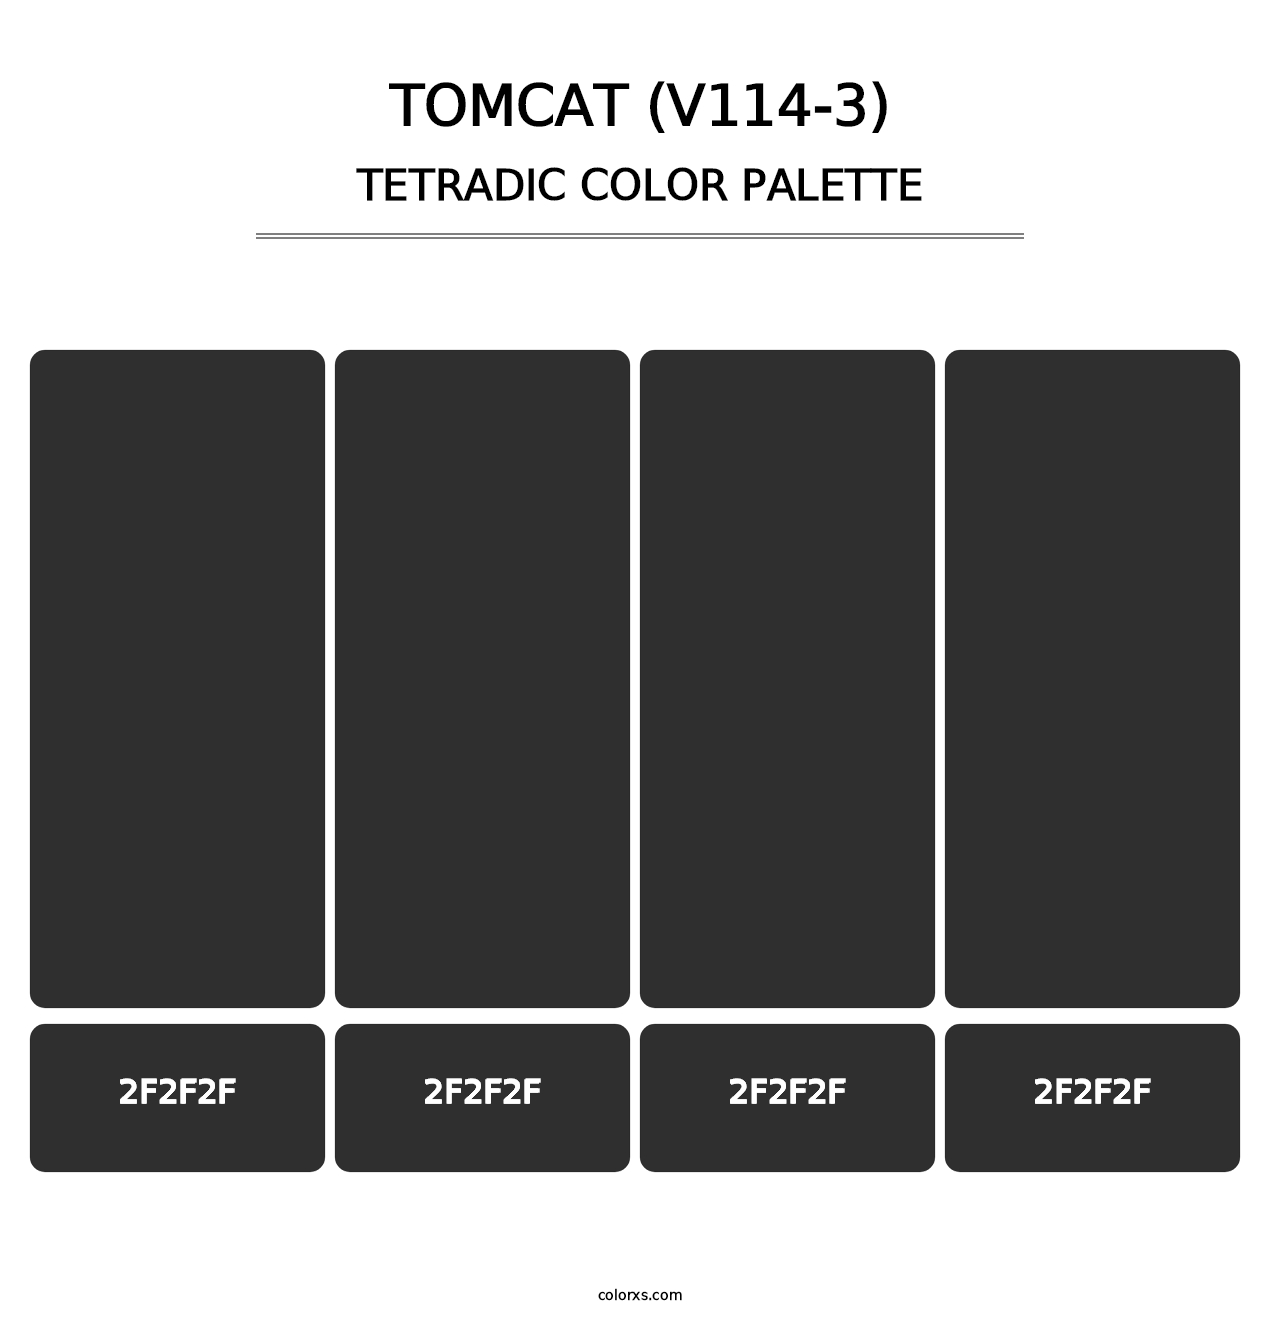 Tomcat (V114-3) - Tetradic Color Palette